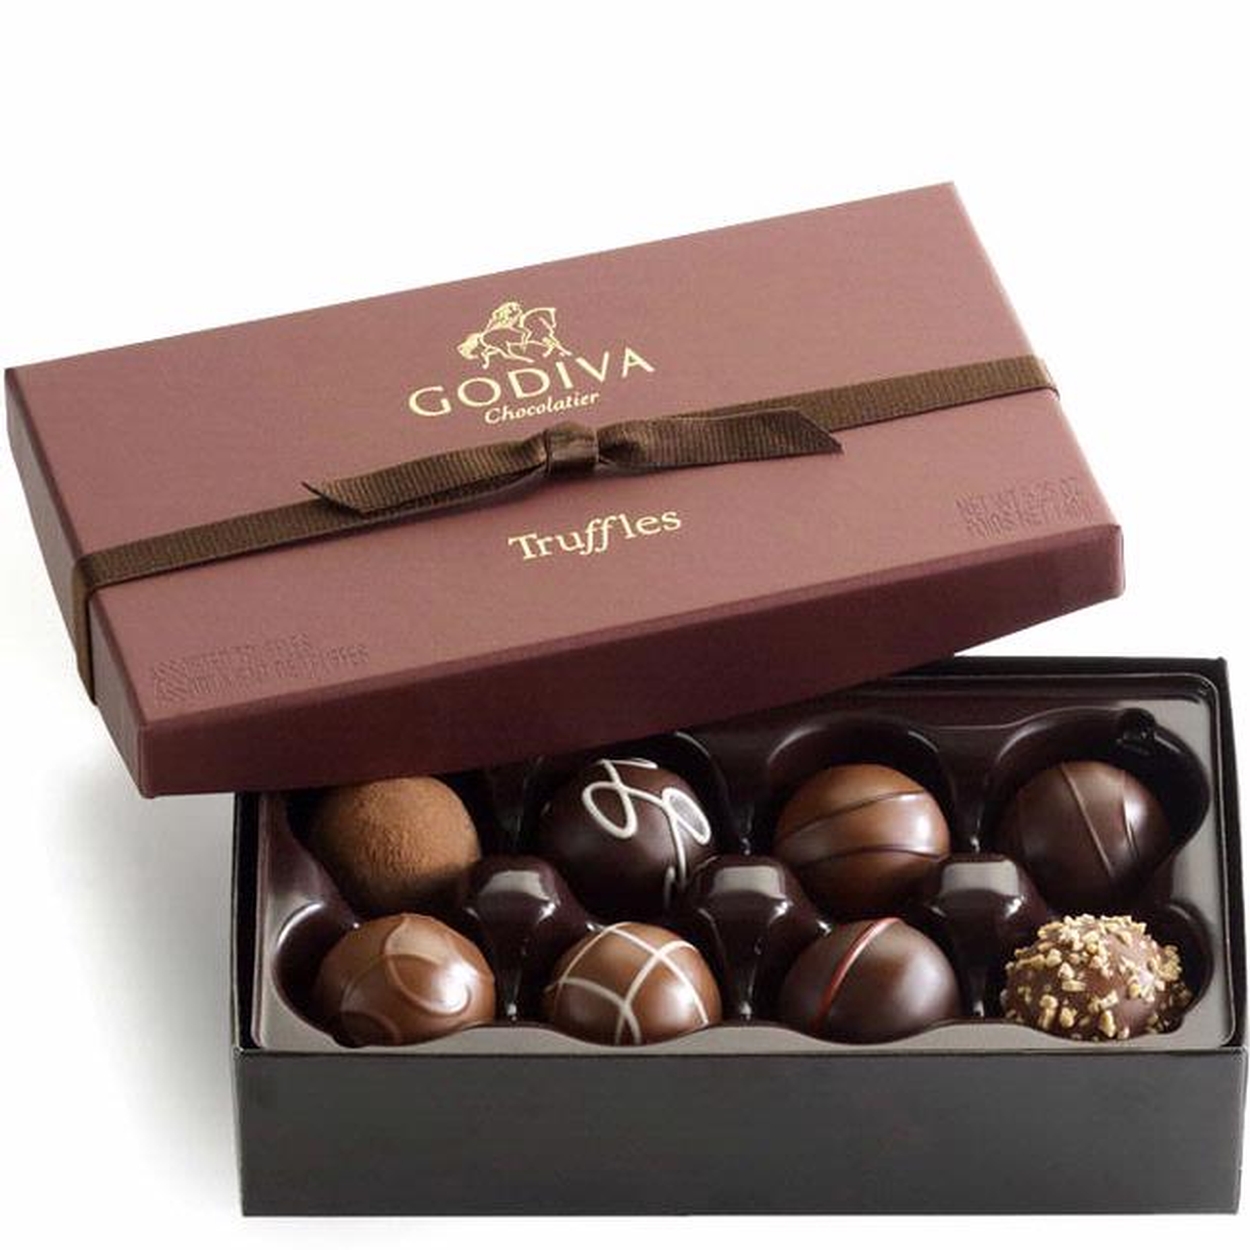 godiva chocolate gifts